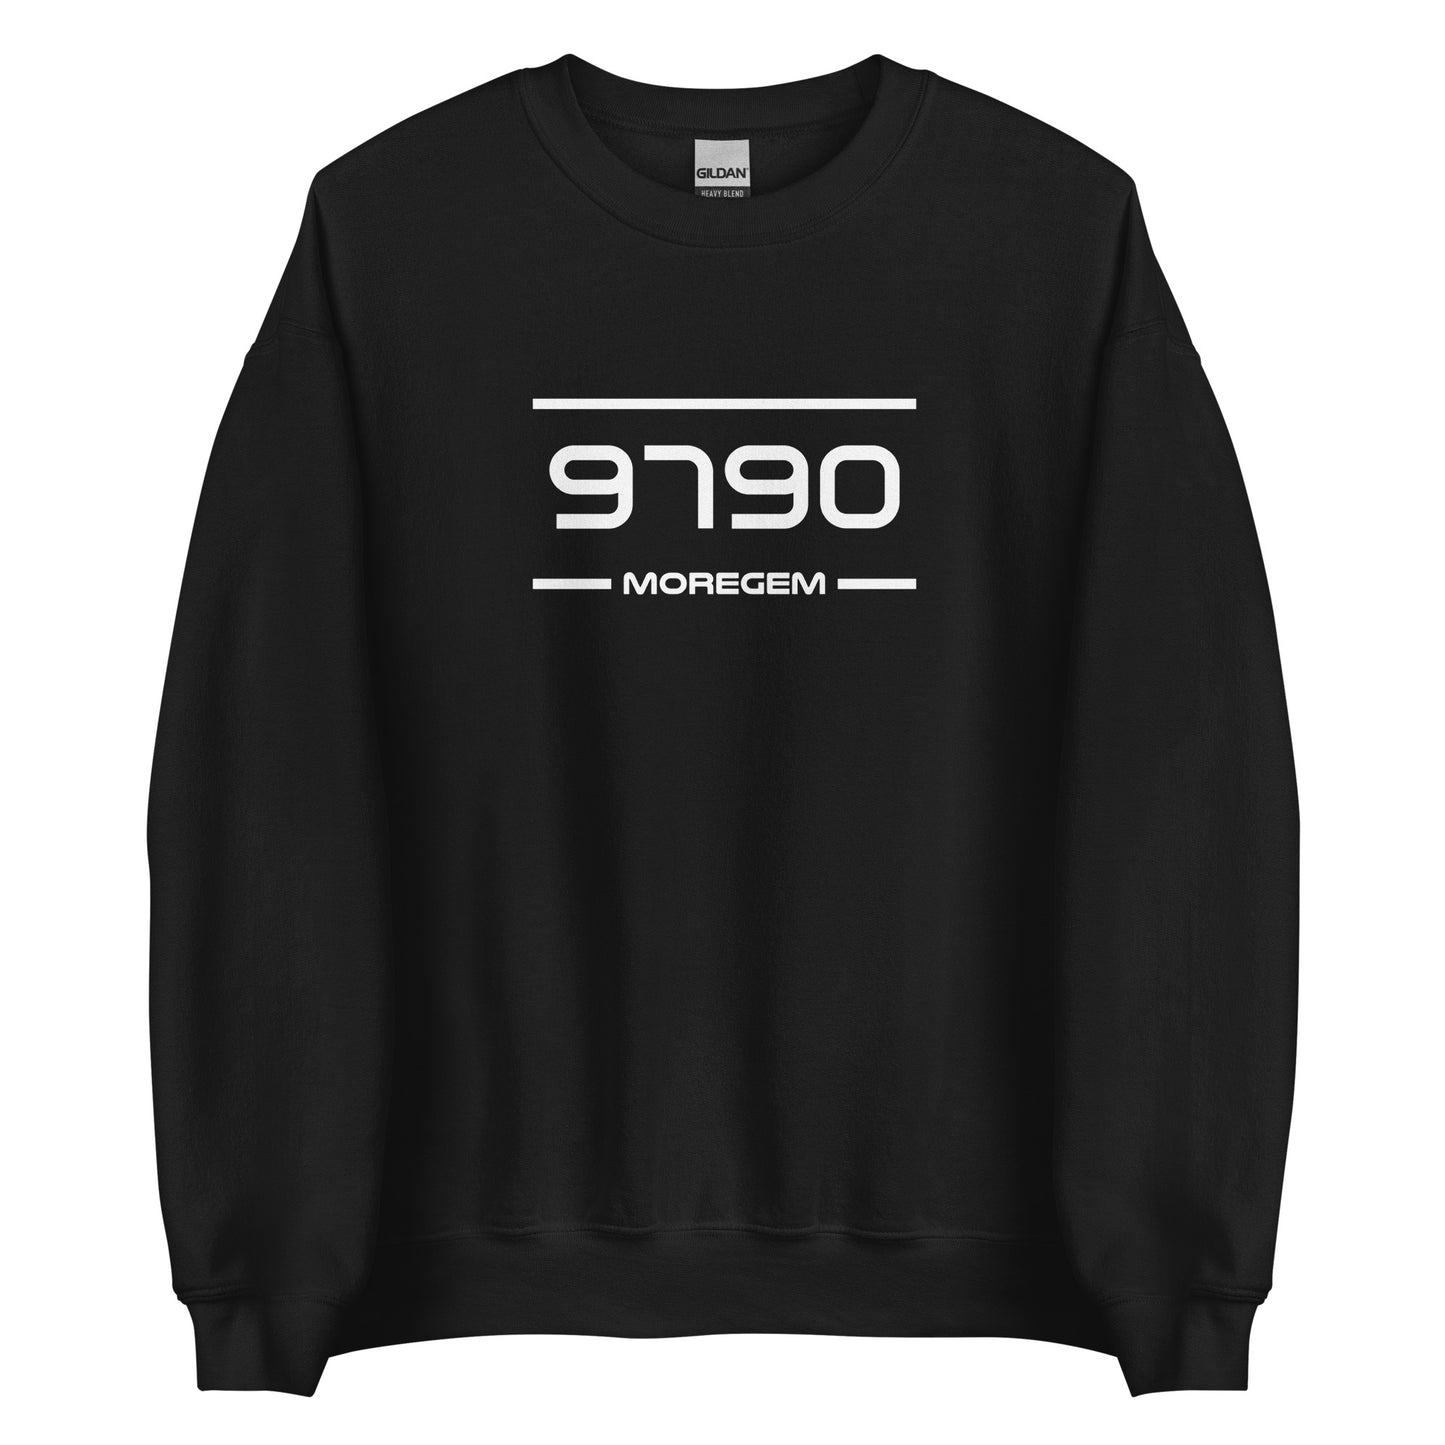 Sweater - 9790 - Moregem (M/V)